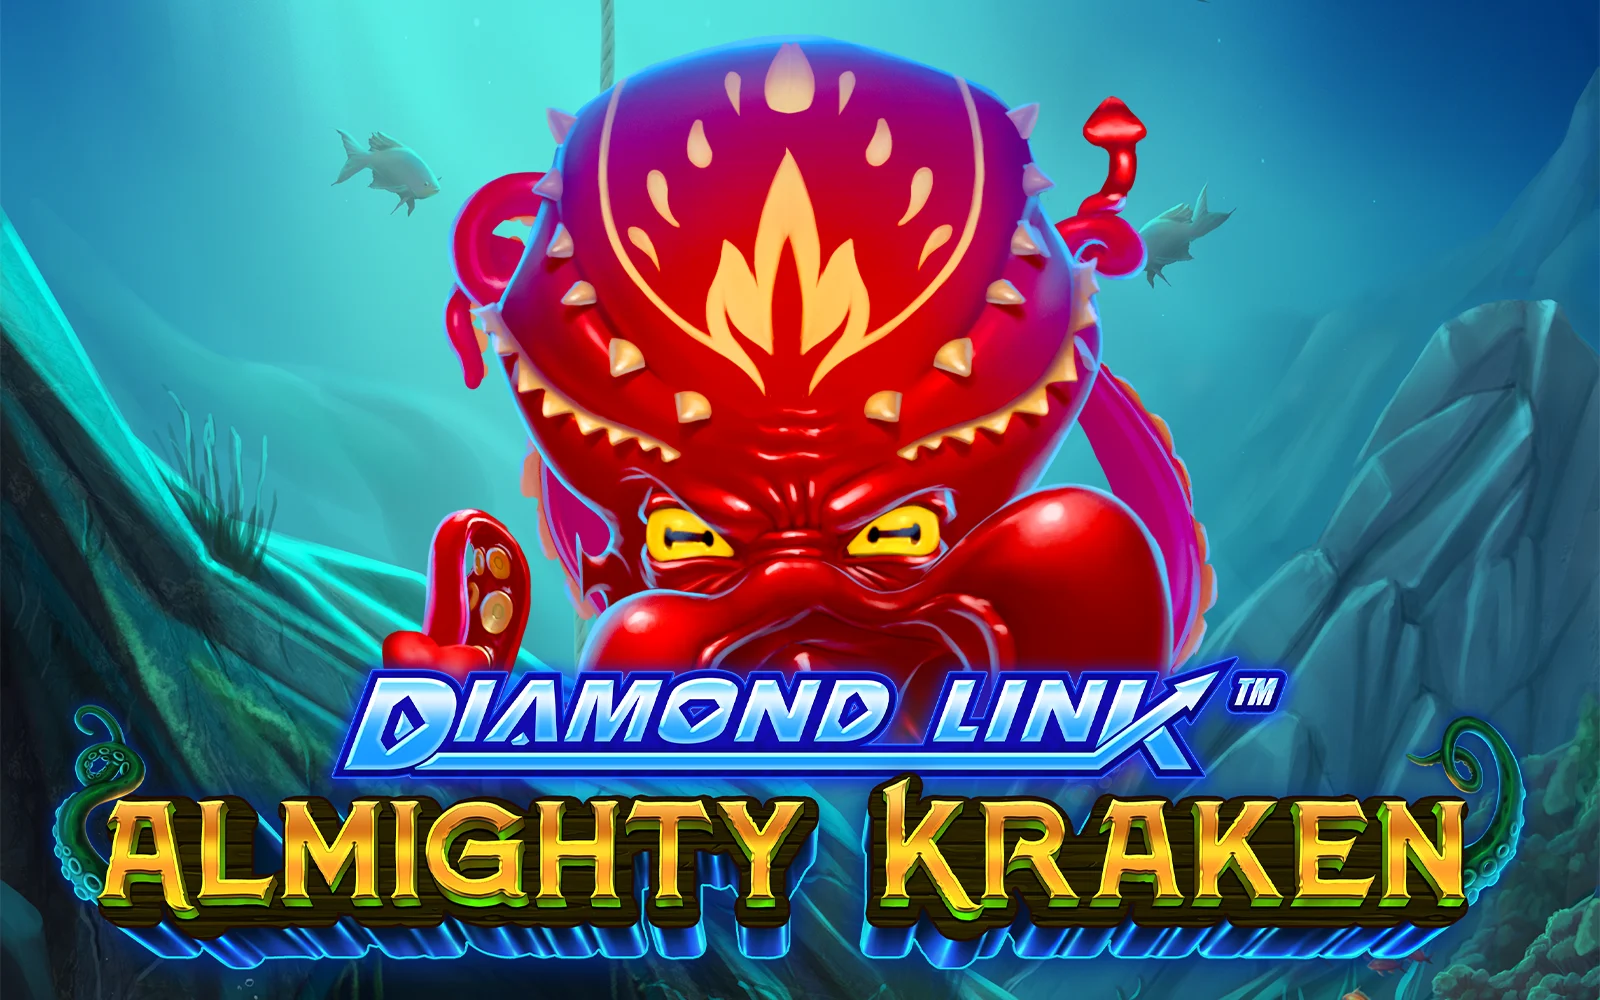 Jogue Diamond Link™ : Almighty Kraken no casino online Starcasino.be 